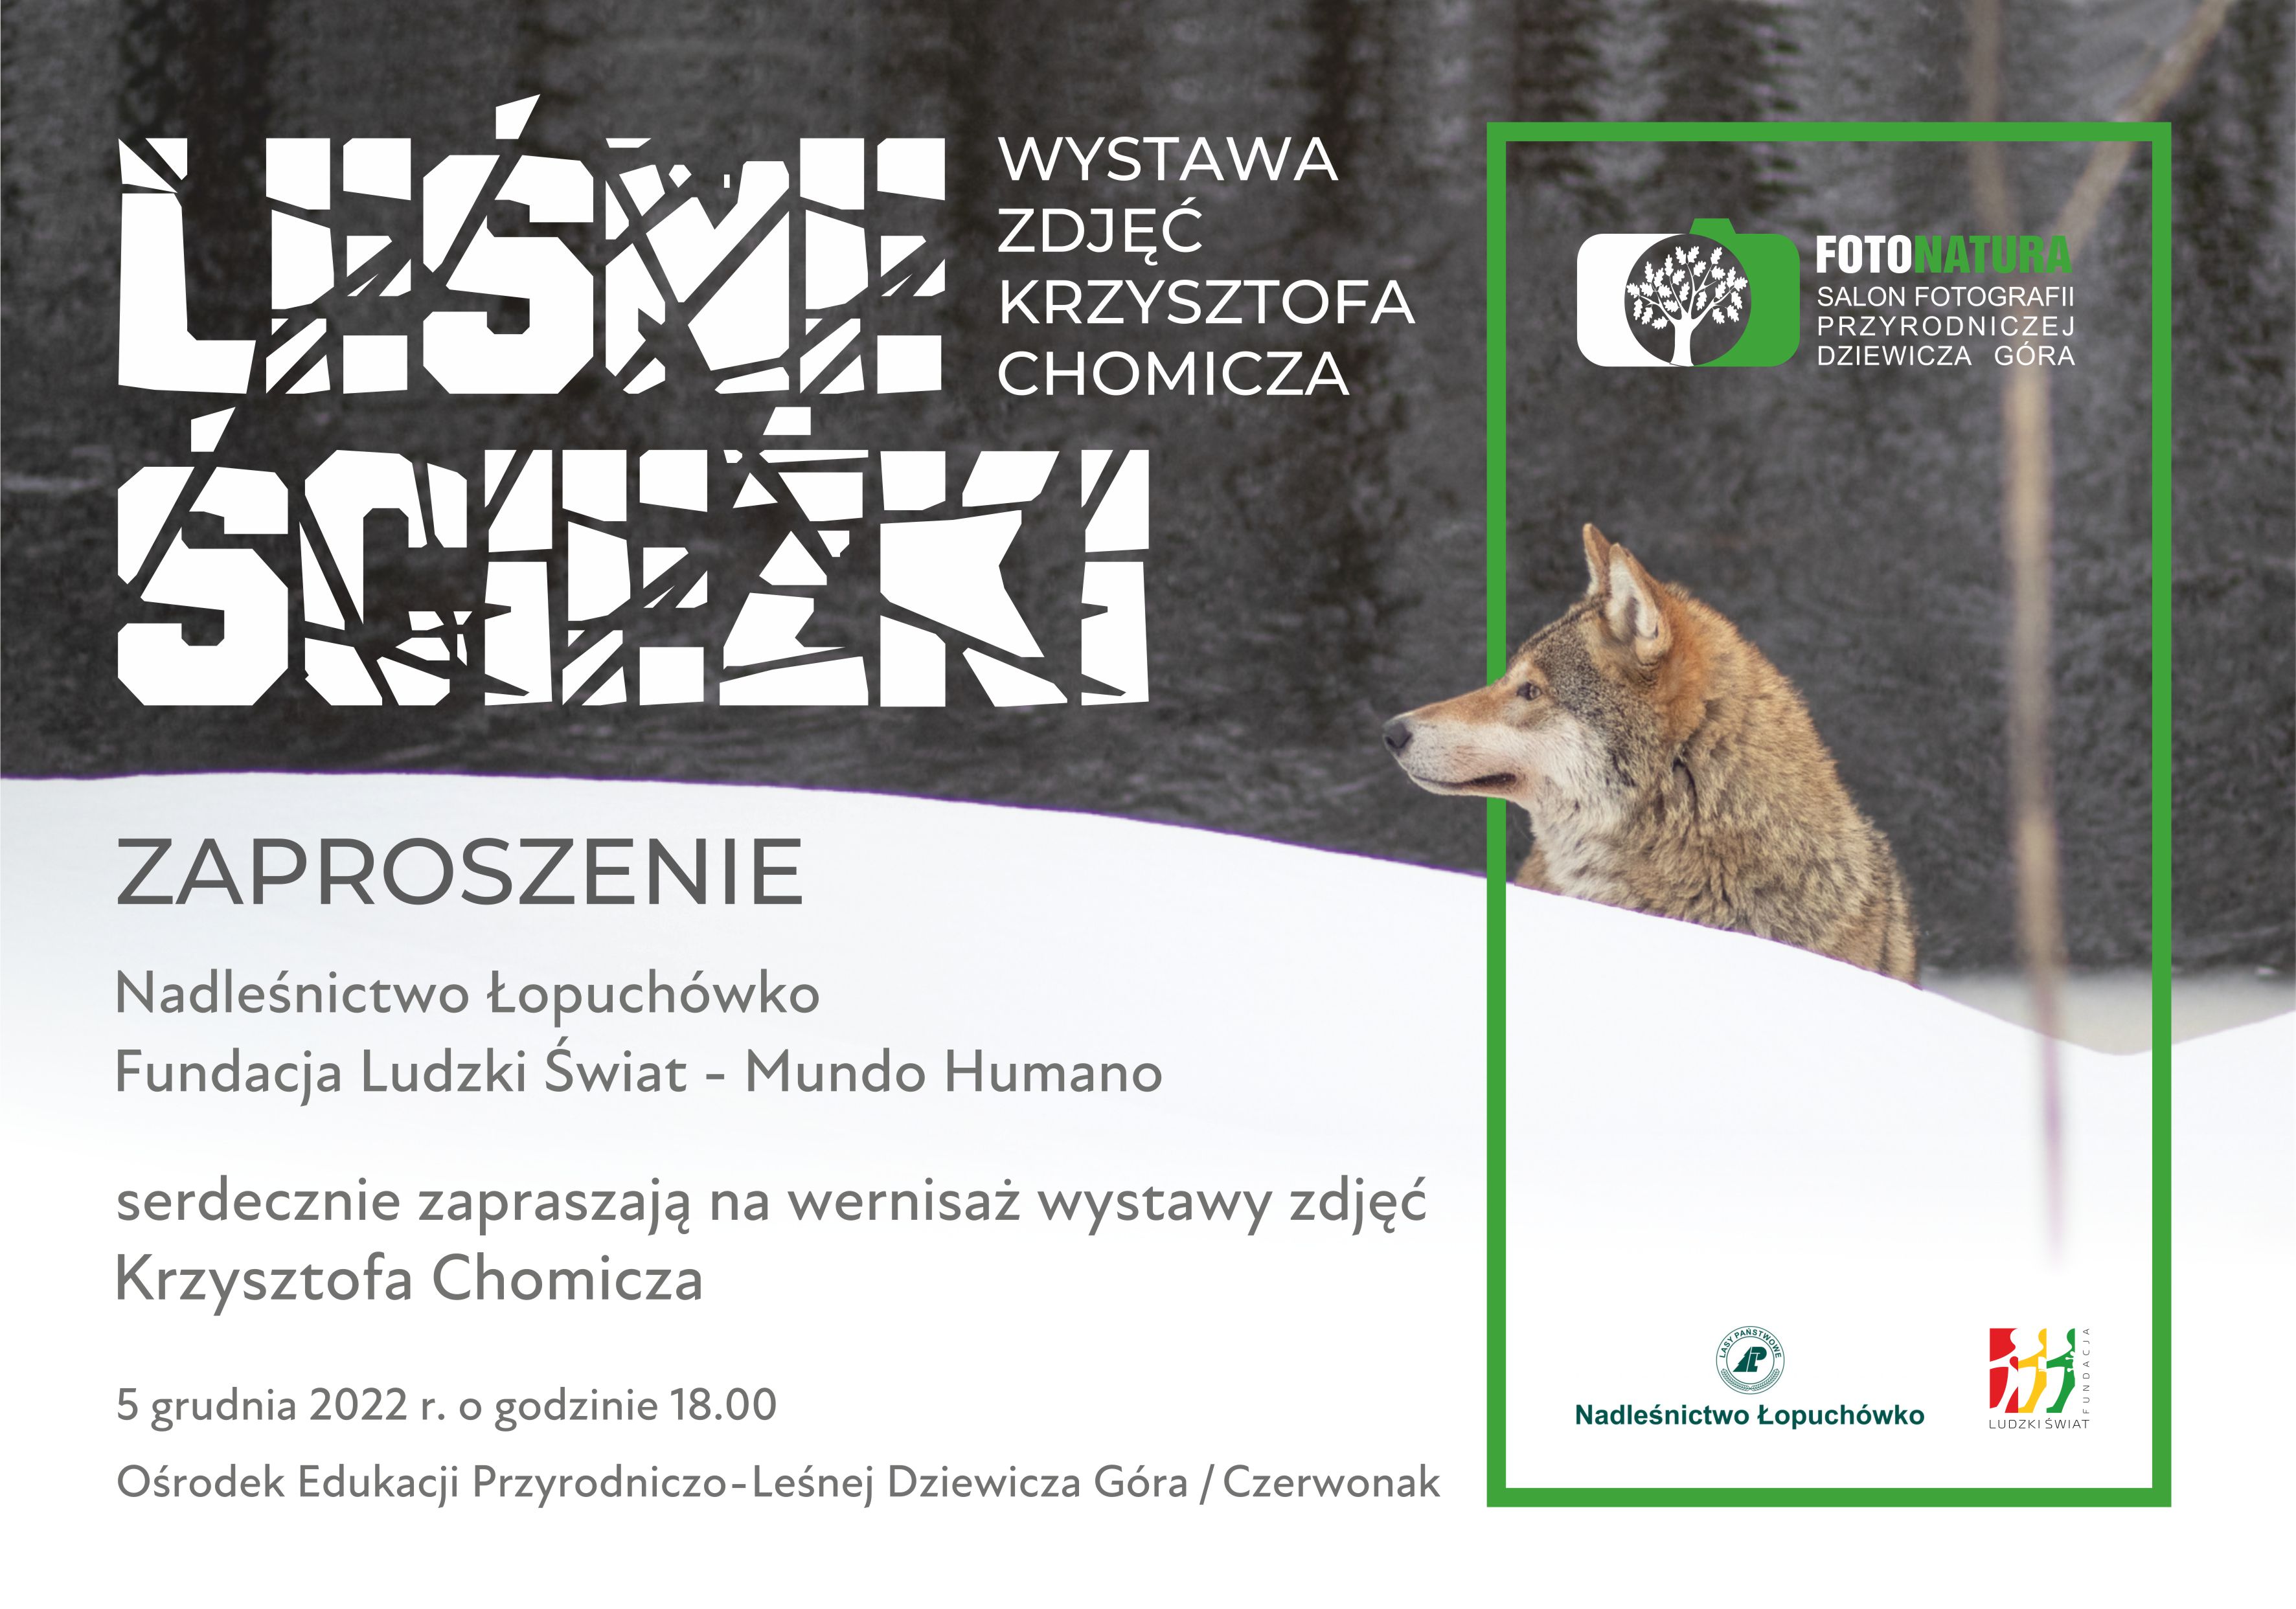 Zdjęcie przedstawia zaproszenie na wystawę zdjęć Krzysztofa Chomicza. Źródło: Nadleśnictwo Łopuchówko